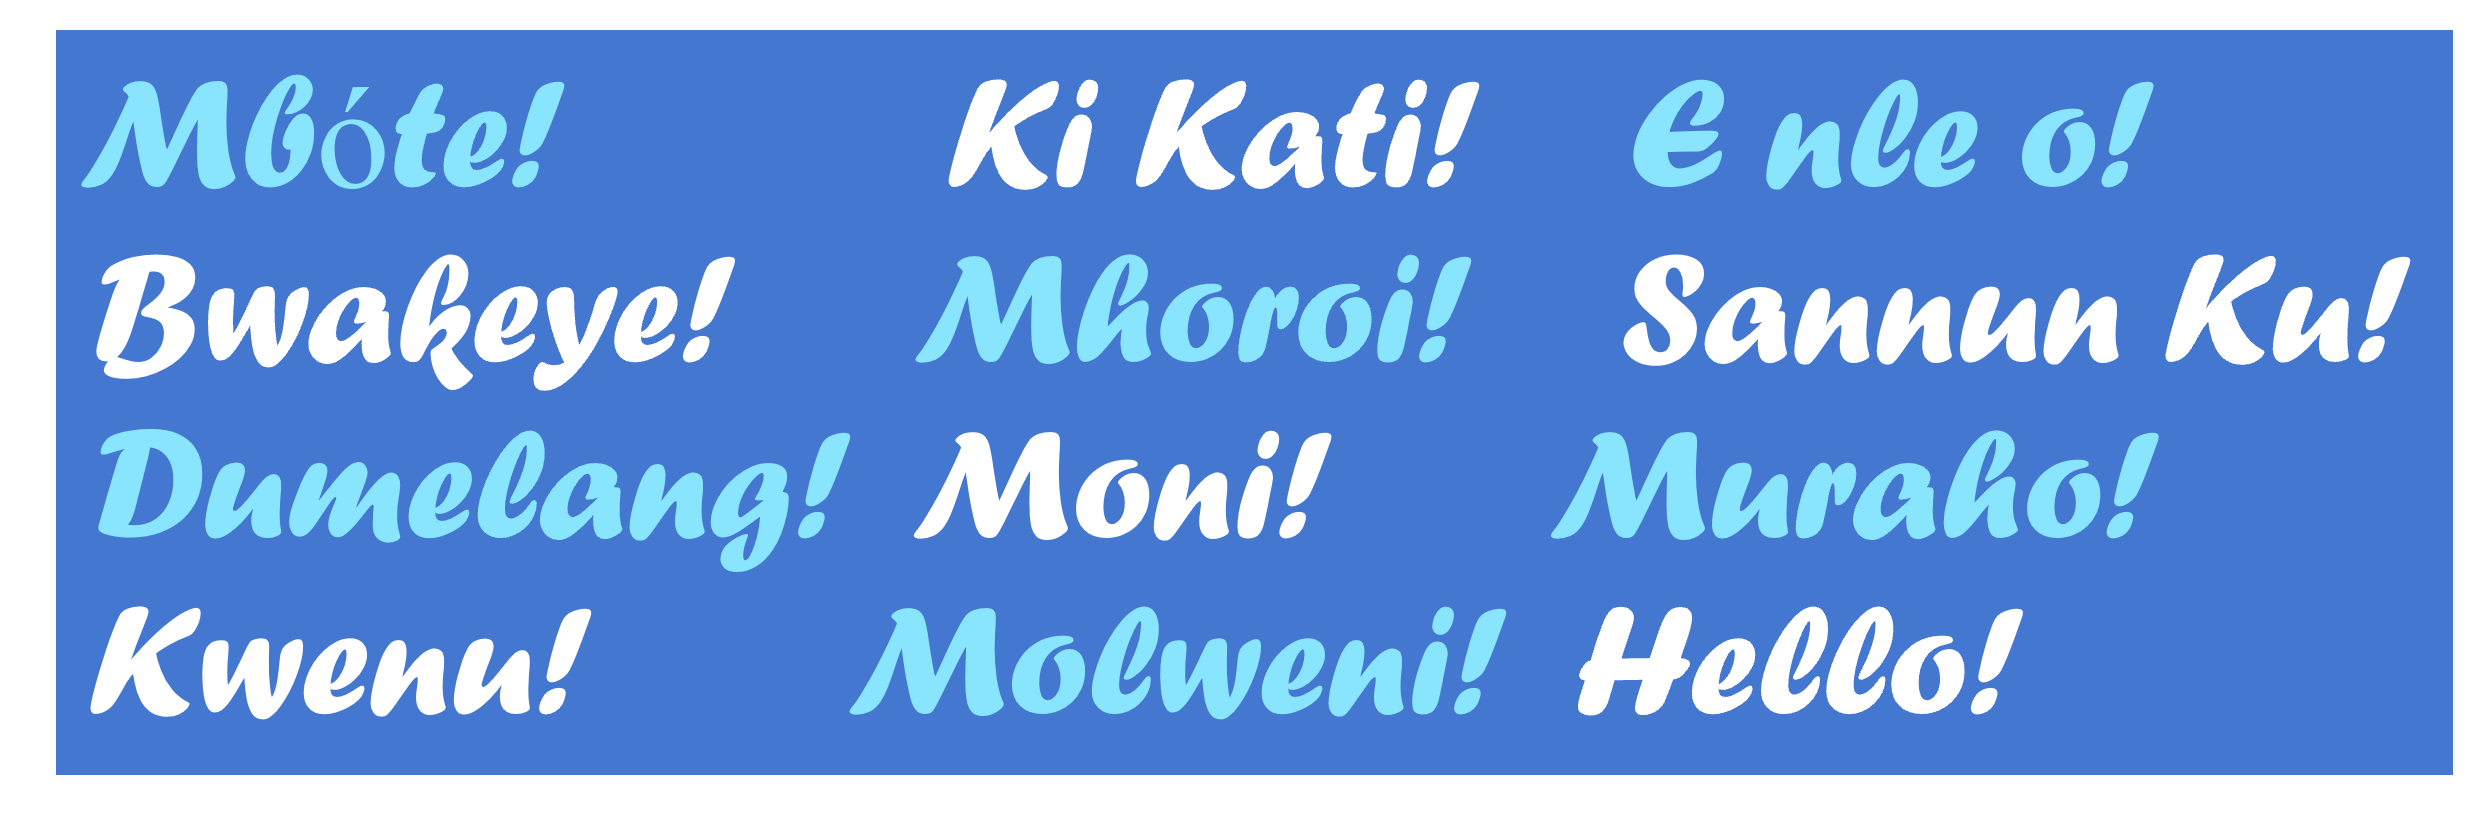 La imagen muestra la frase inglesa "Hello" y su traducción al conjunto de lenguas africanas descritas en esta entrada del blog.